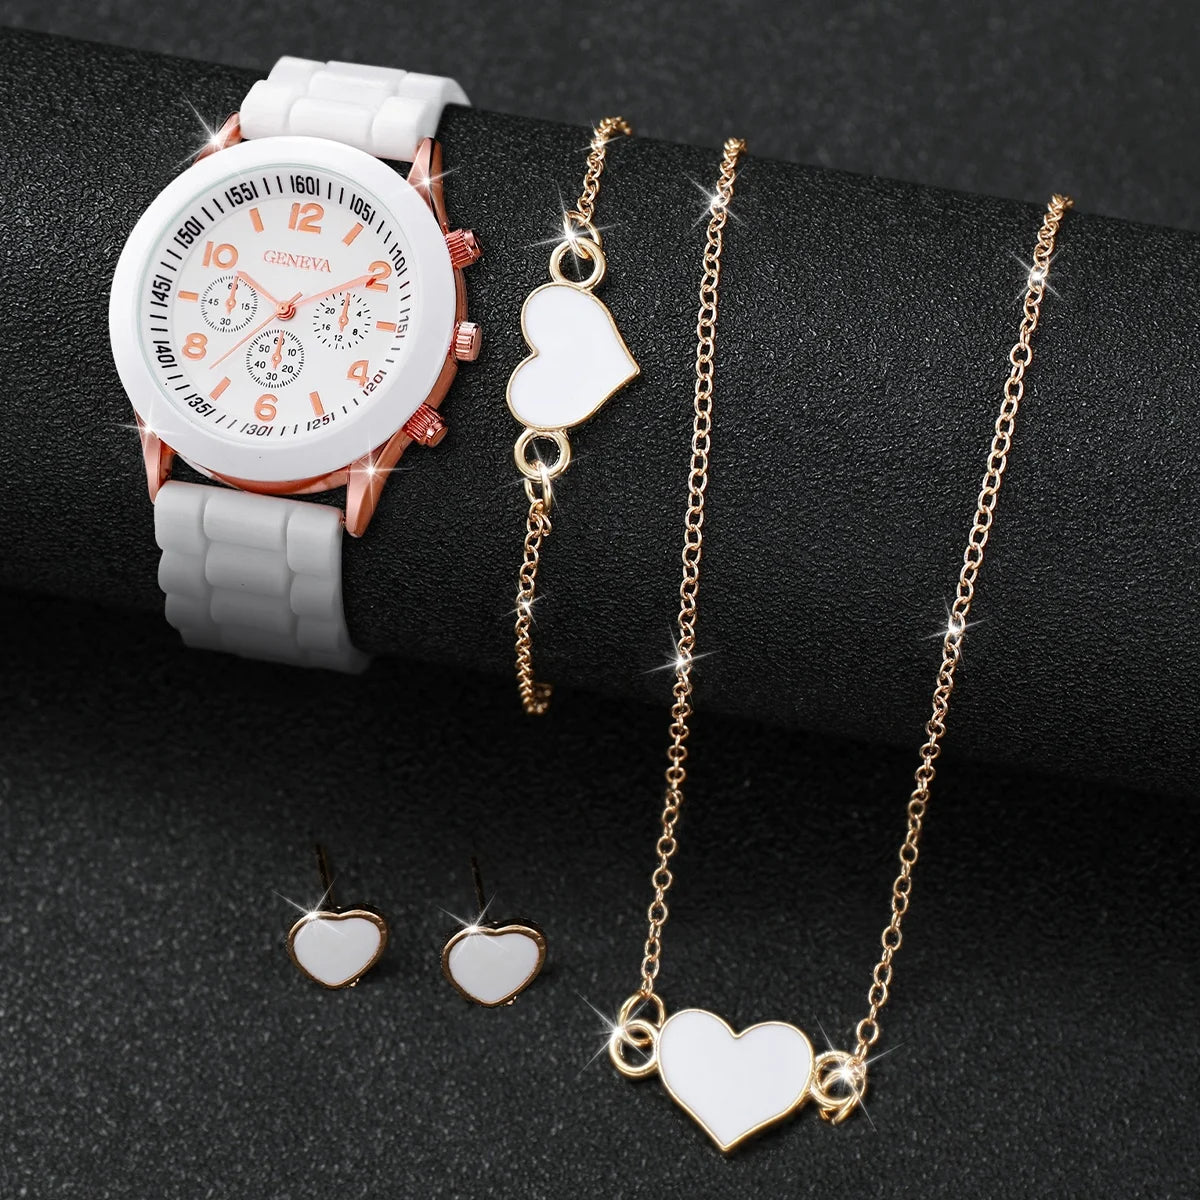 4Pcs/Set Geneva Watch Fashion Silicone Band Women Watches Heart Jewelry Set ( without Box ）